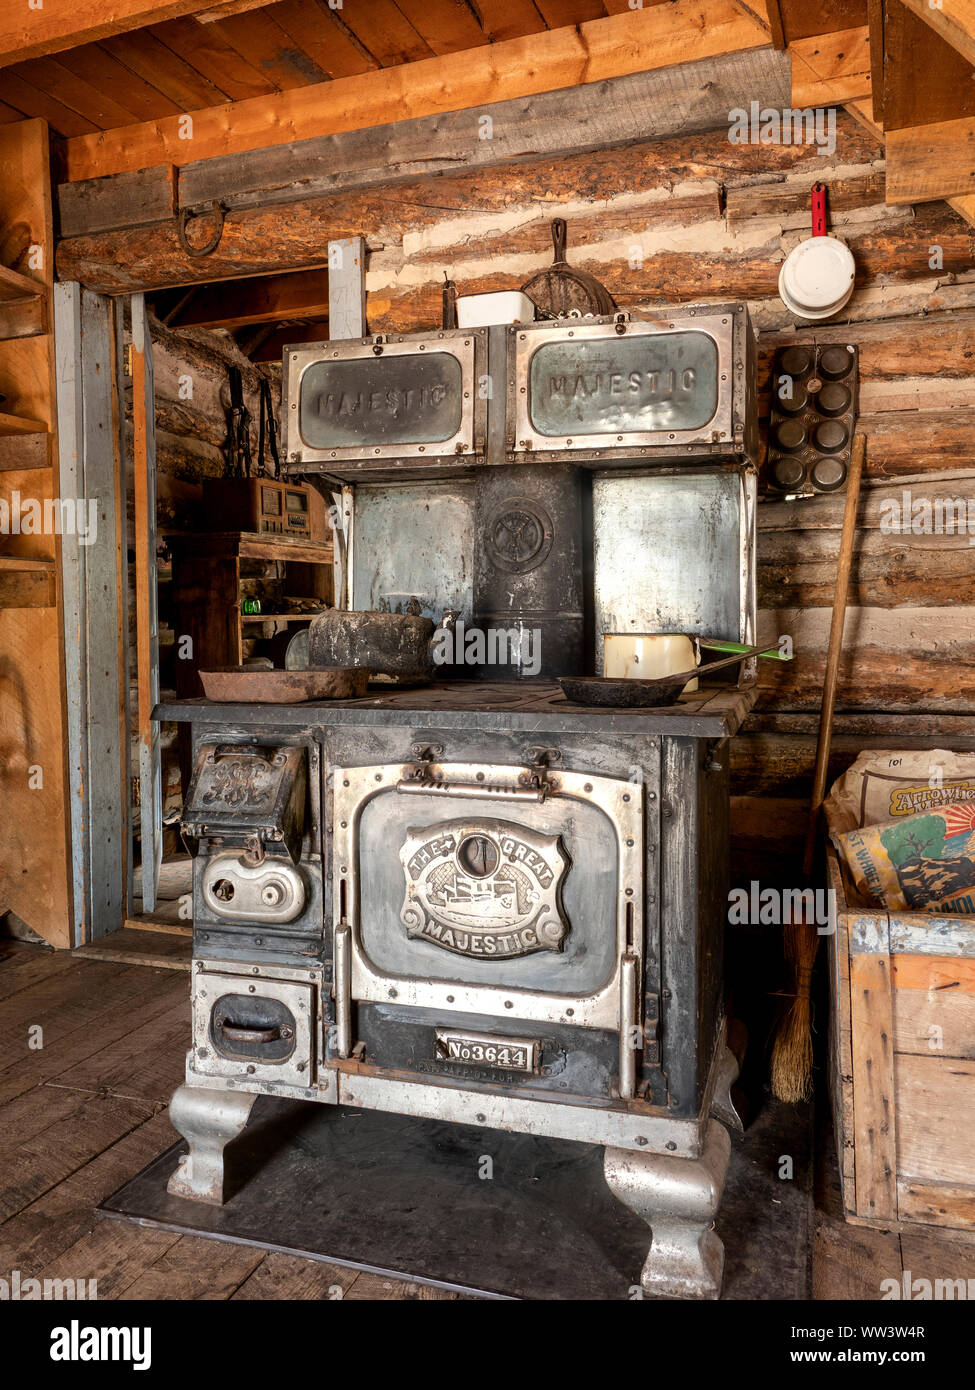 Vintage Rustic Cottage Copper Majestic Metal Teapot Kettle Wooden Handle  Gallon